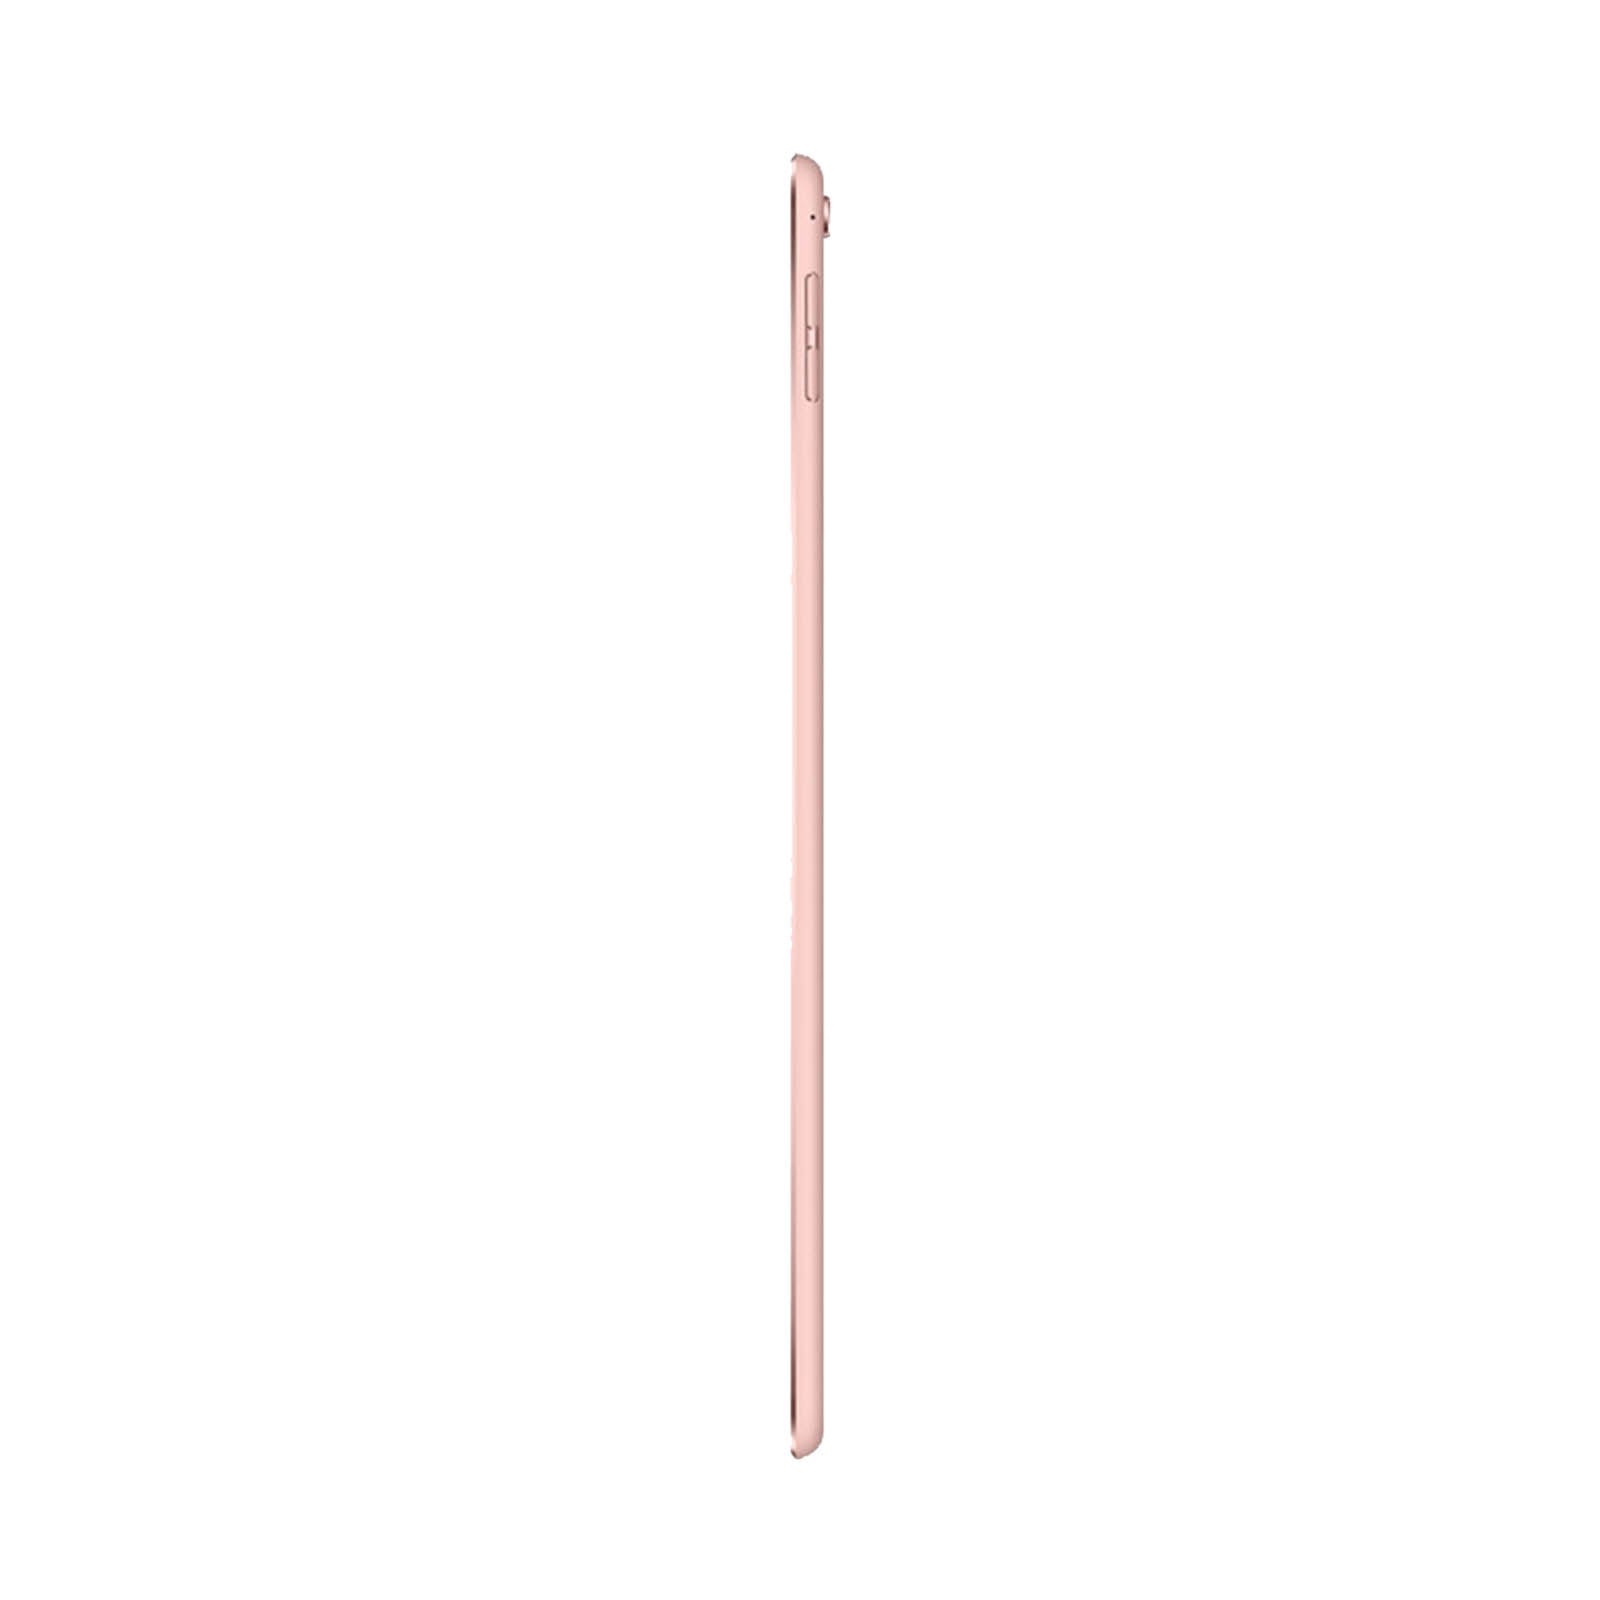 iPad Pro 9.7" 32GB Oro Rosa Molto Buono Sbloccato